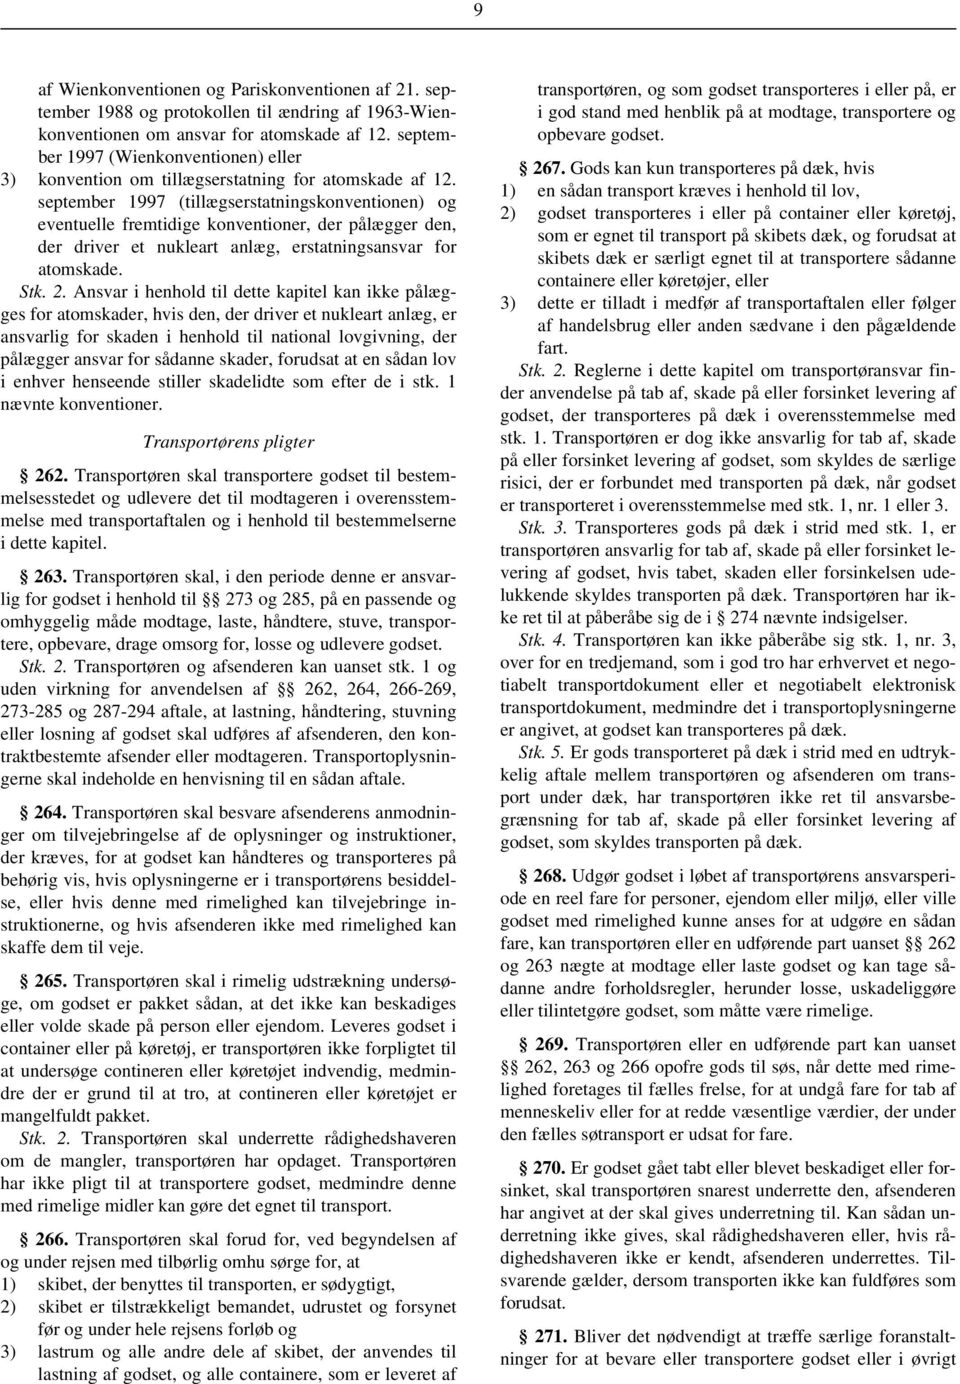 september 1997 (tillægserstatningskonventionen) og eventuelle fremtidige konventioner, der pålægger den, der driver et nukleart anlæg, erstatningsansvar for atomskade. Stk. 2.